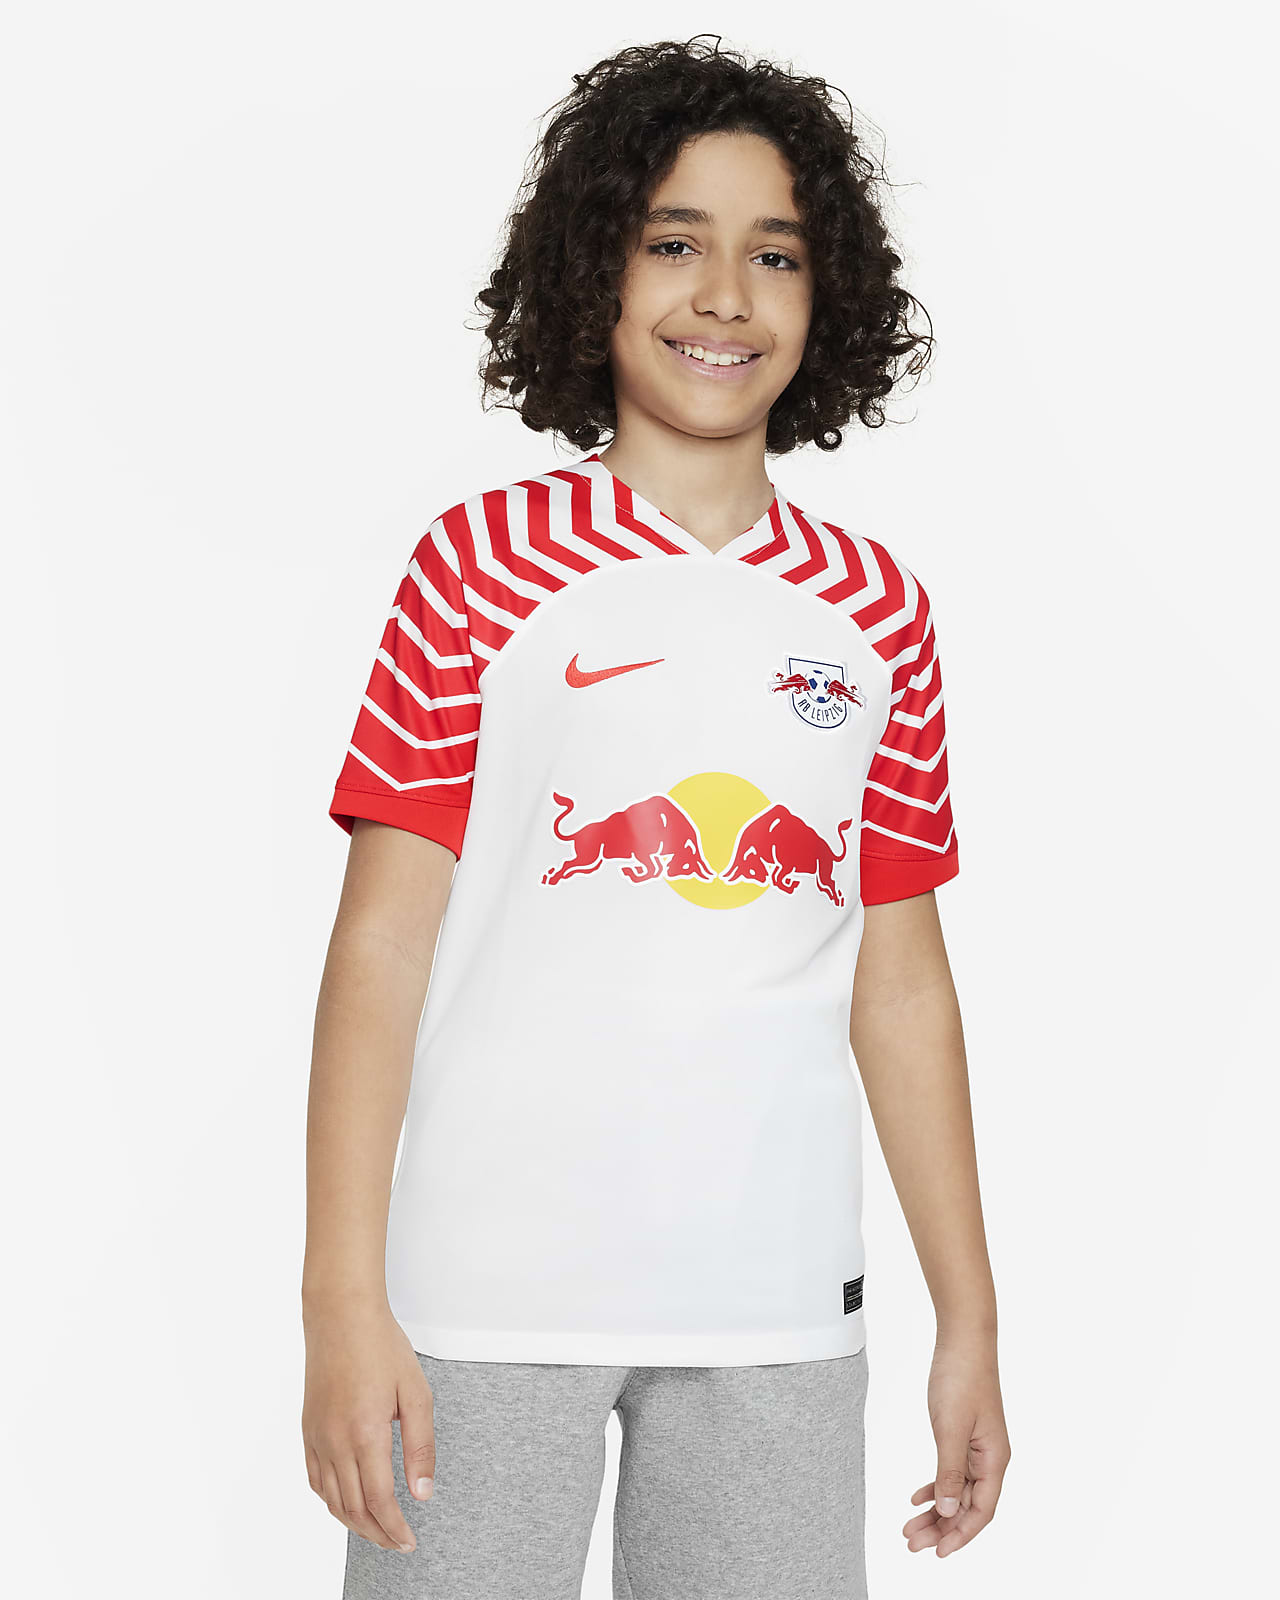 RB Leipzig 2023/24 Stadium Thuis Nike Dri-FIT voetbalshirt voor oudere kids